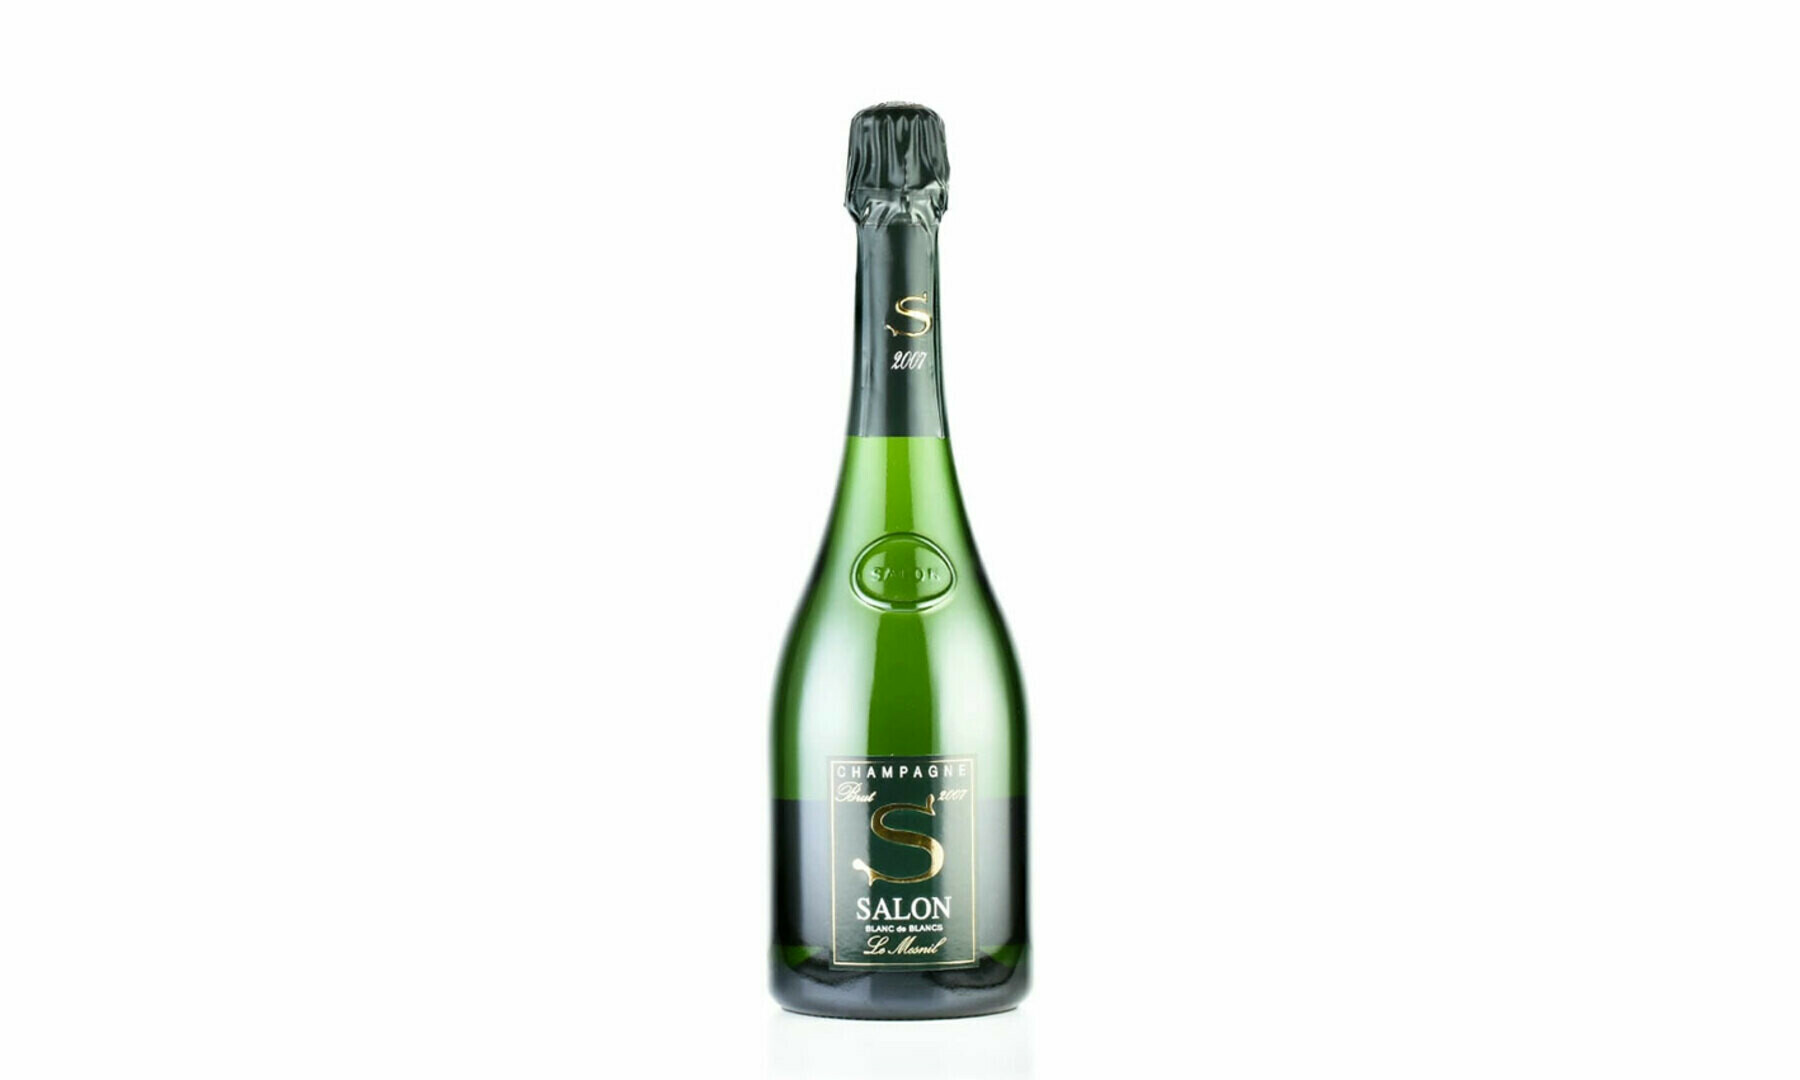 SALON 2007 シャンパン